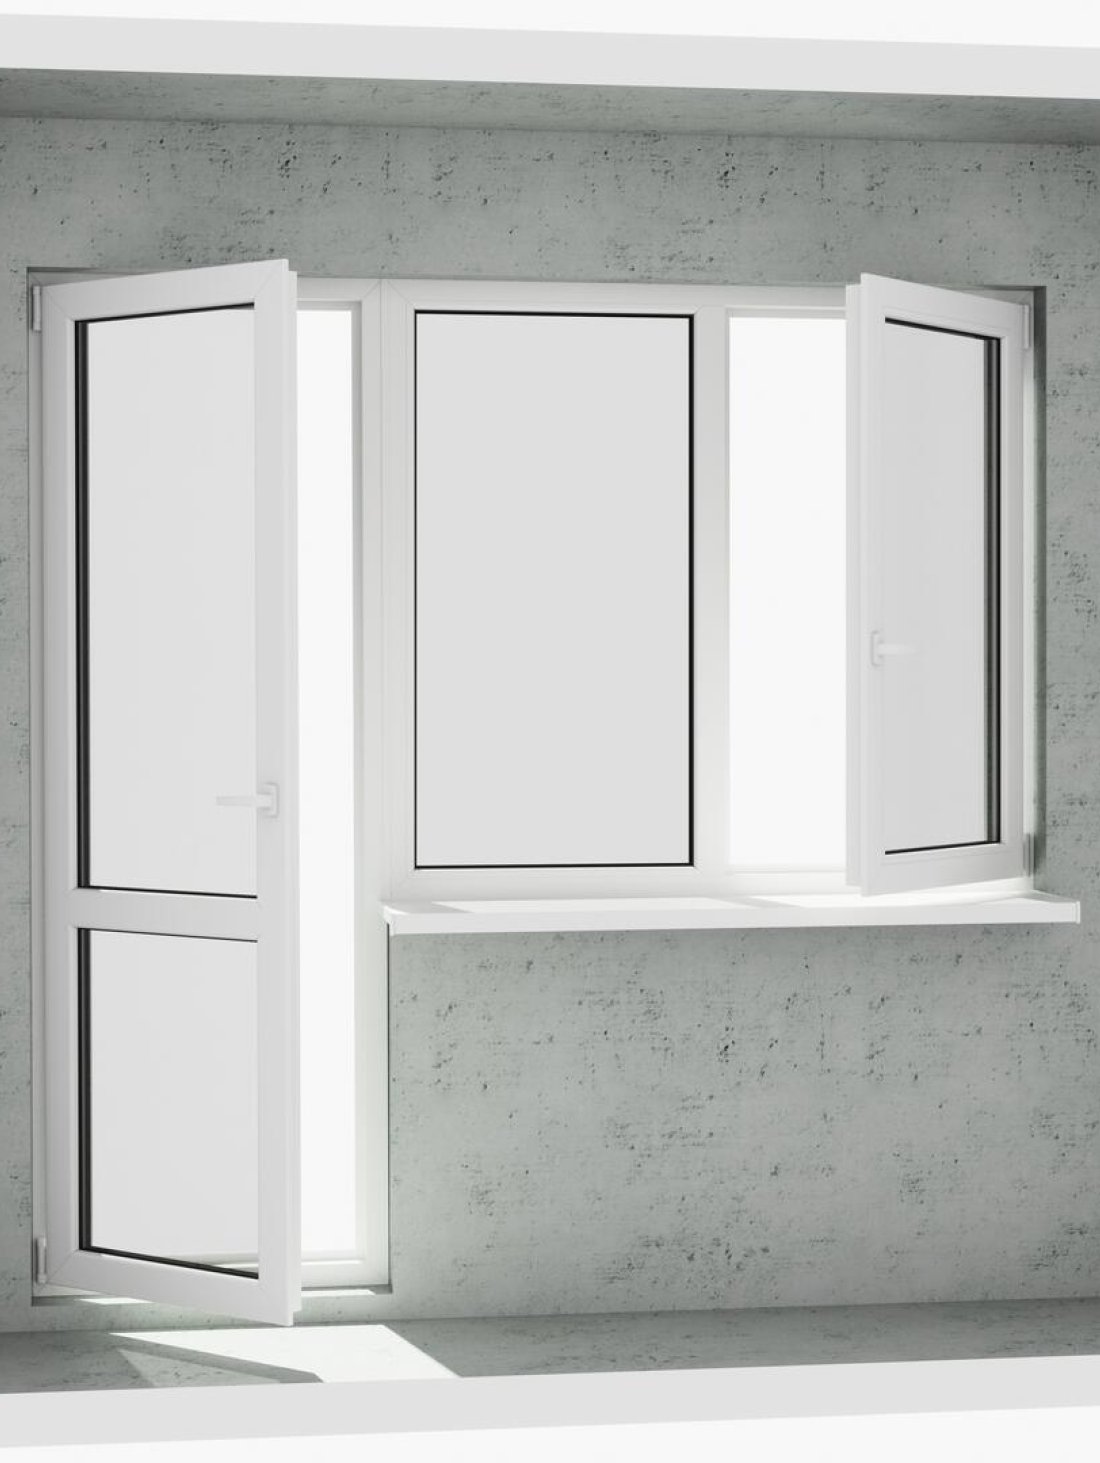 Вихід на лоджію (балкон): класичний білий металопластиковий балконний блок (в двері є режим провітрювання та відкривається 1 половинка вікна) - Паритет UA